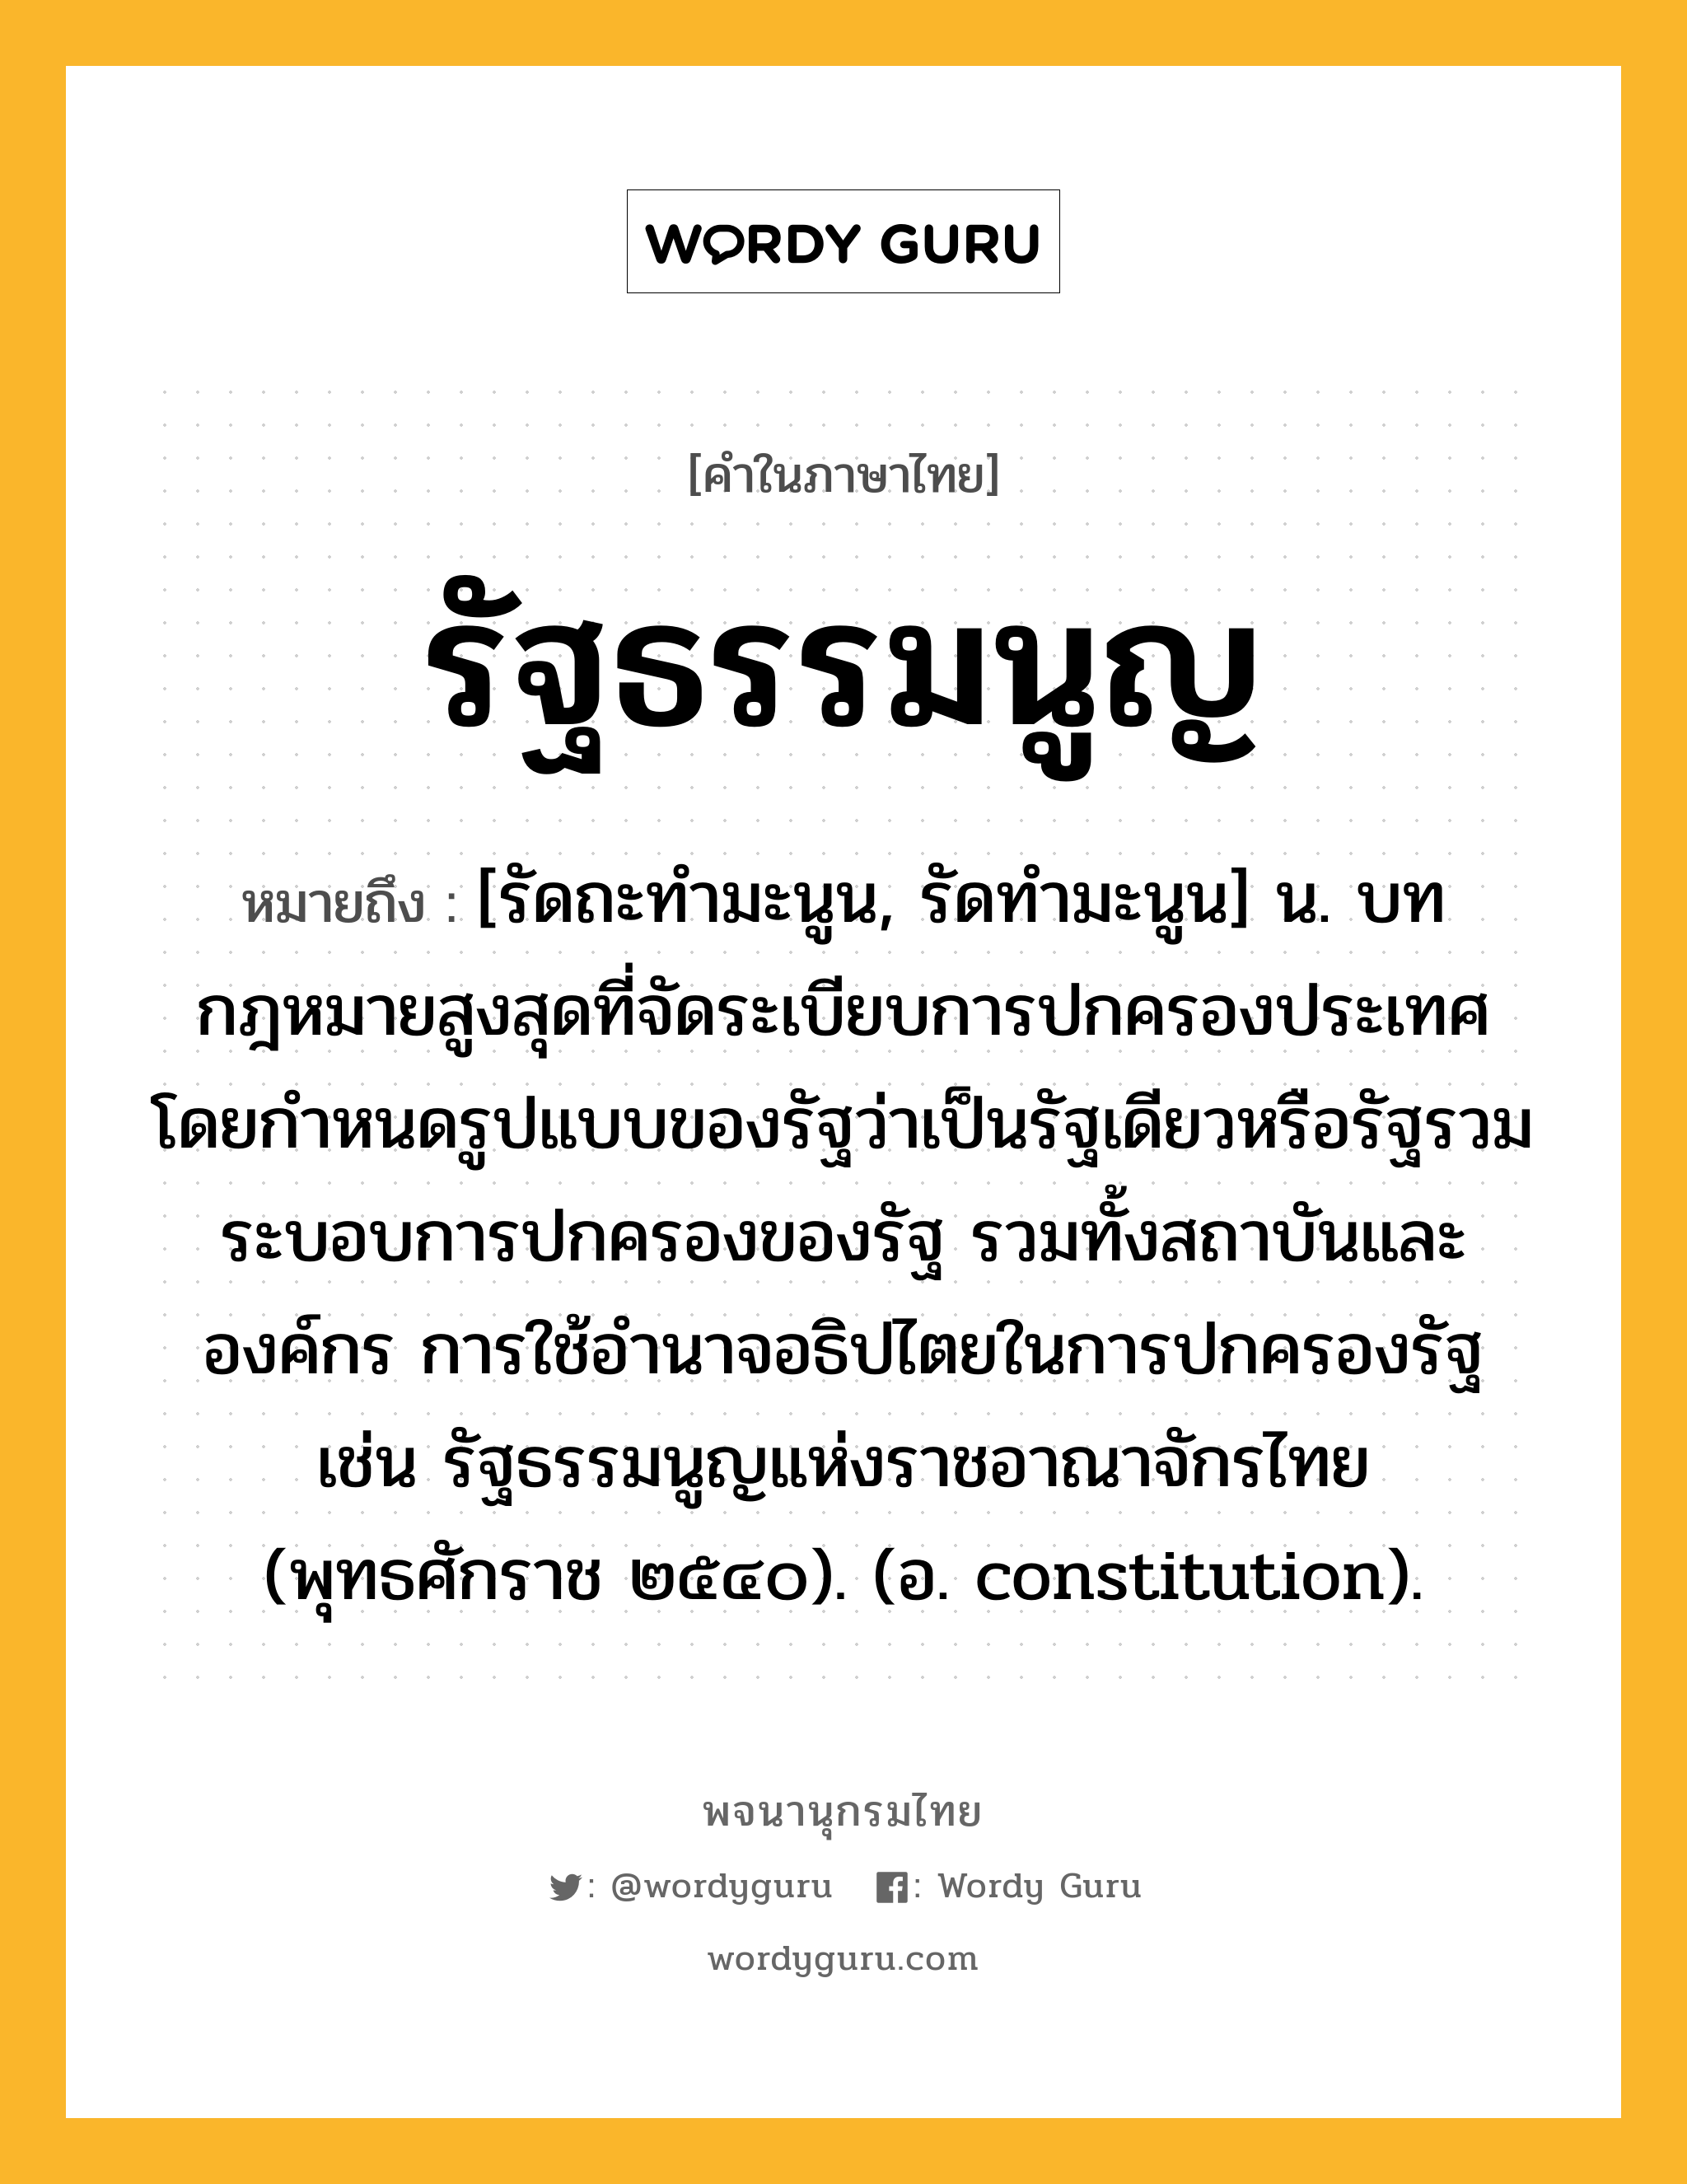 รัฐธรรมนูญ หมายถึงอะไร?, คำในภาษาไทย รัฐธรรมนูญ หมายถึง [รัดถะทํามะนูน, รัดทํามะนูน] น. บทกฎหมายสูงสุดที่จัดระเบียบการปกครองประเทศ โดยกำหนดรูปแบบของรัฐว่าเป็นรัฐเดียวหรือรัฐรวม ระบอบการปกครองของรัฐ รวมทั้งสถาบันและองค์กร การใช้อำนาจอธิปไตยในการปกครองรัฐ เช่น รัฐธรรมนูญแห่งราชอาณาจักรไทย (พุทธศักราช ๒๕๔๐). (อ. constitution).